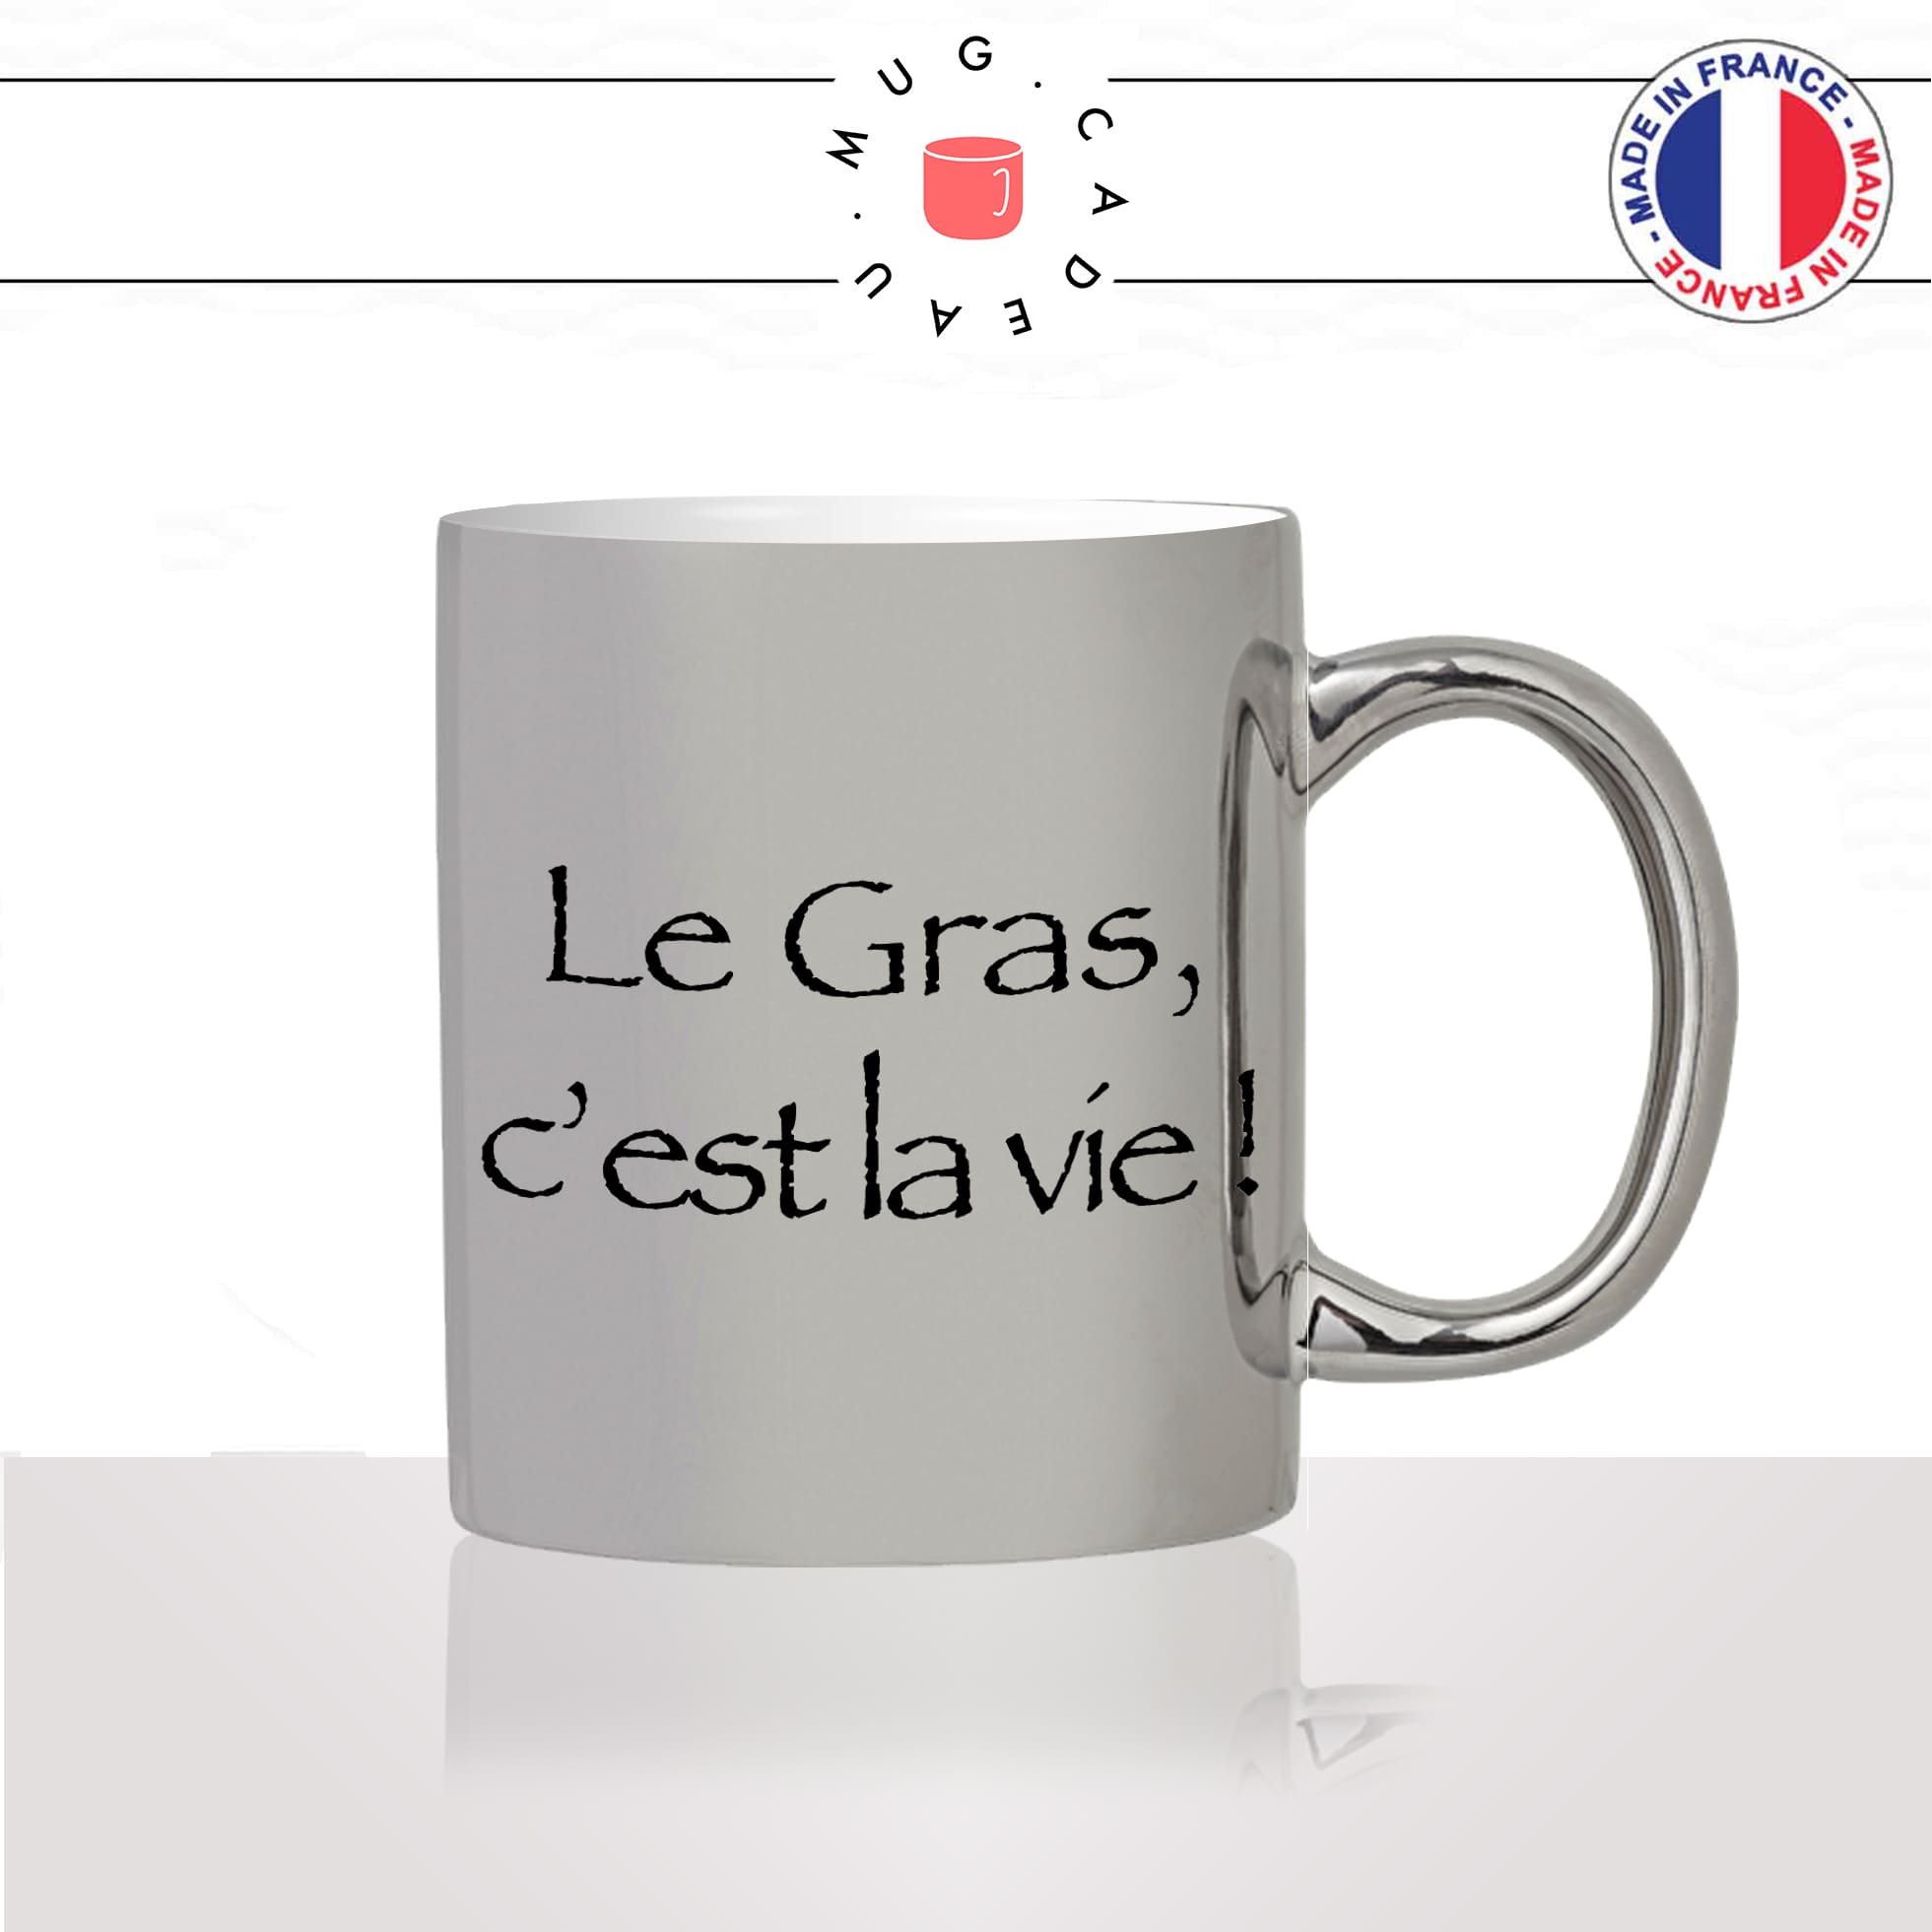 mug-tasse-argent-argenté-silver-série-francaise-culte-kaamelott-arthur-le-gras-cest-la-vie-caradoc-humour-télé-idée-cadeau-fun-cool-café-thé2